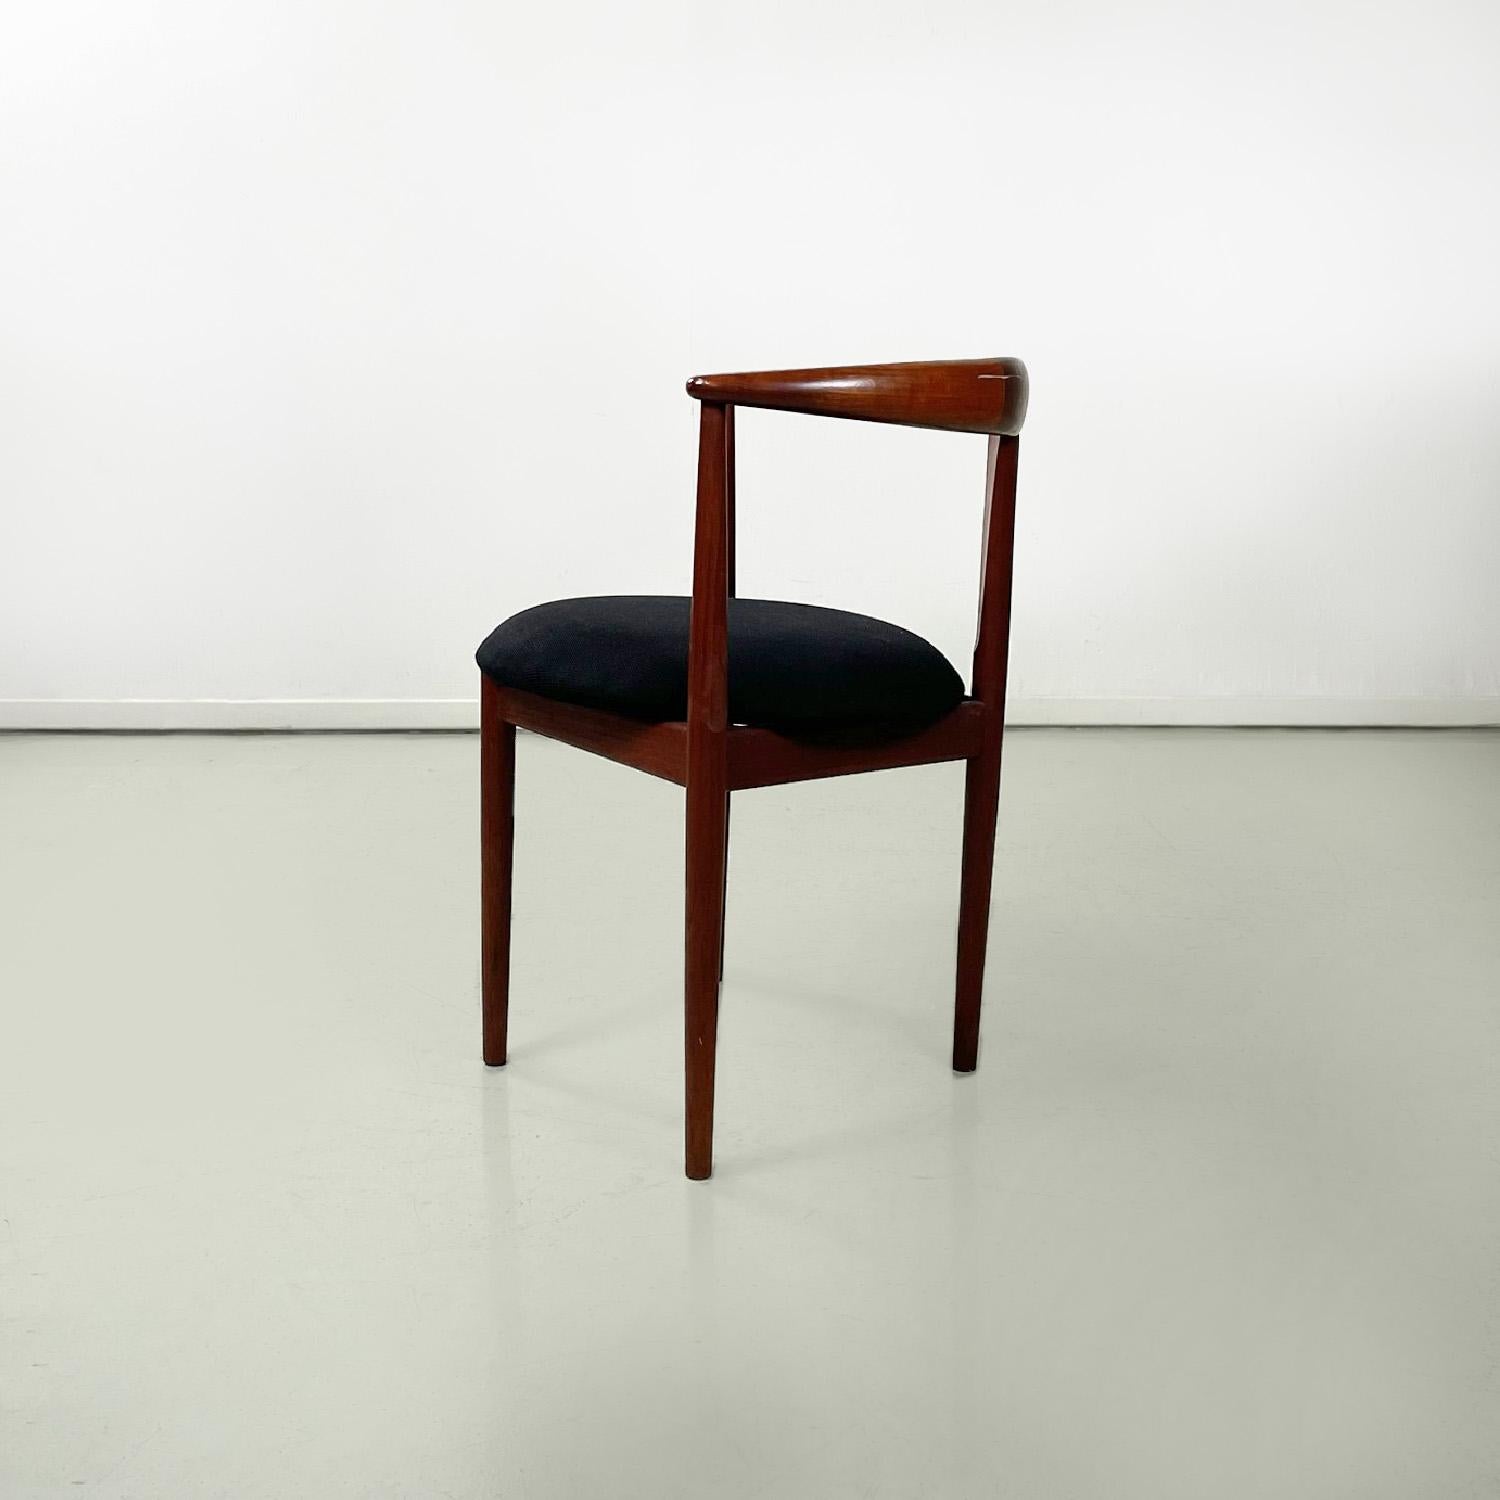 Mid-Century Modern Solid teak wood chairs by Vilhelm Wohlert for Paul Jeppesen Mobelfabrik, 1960s